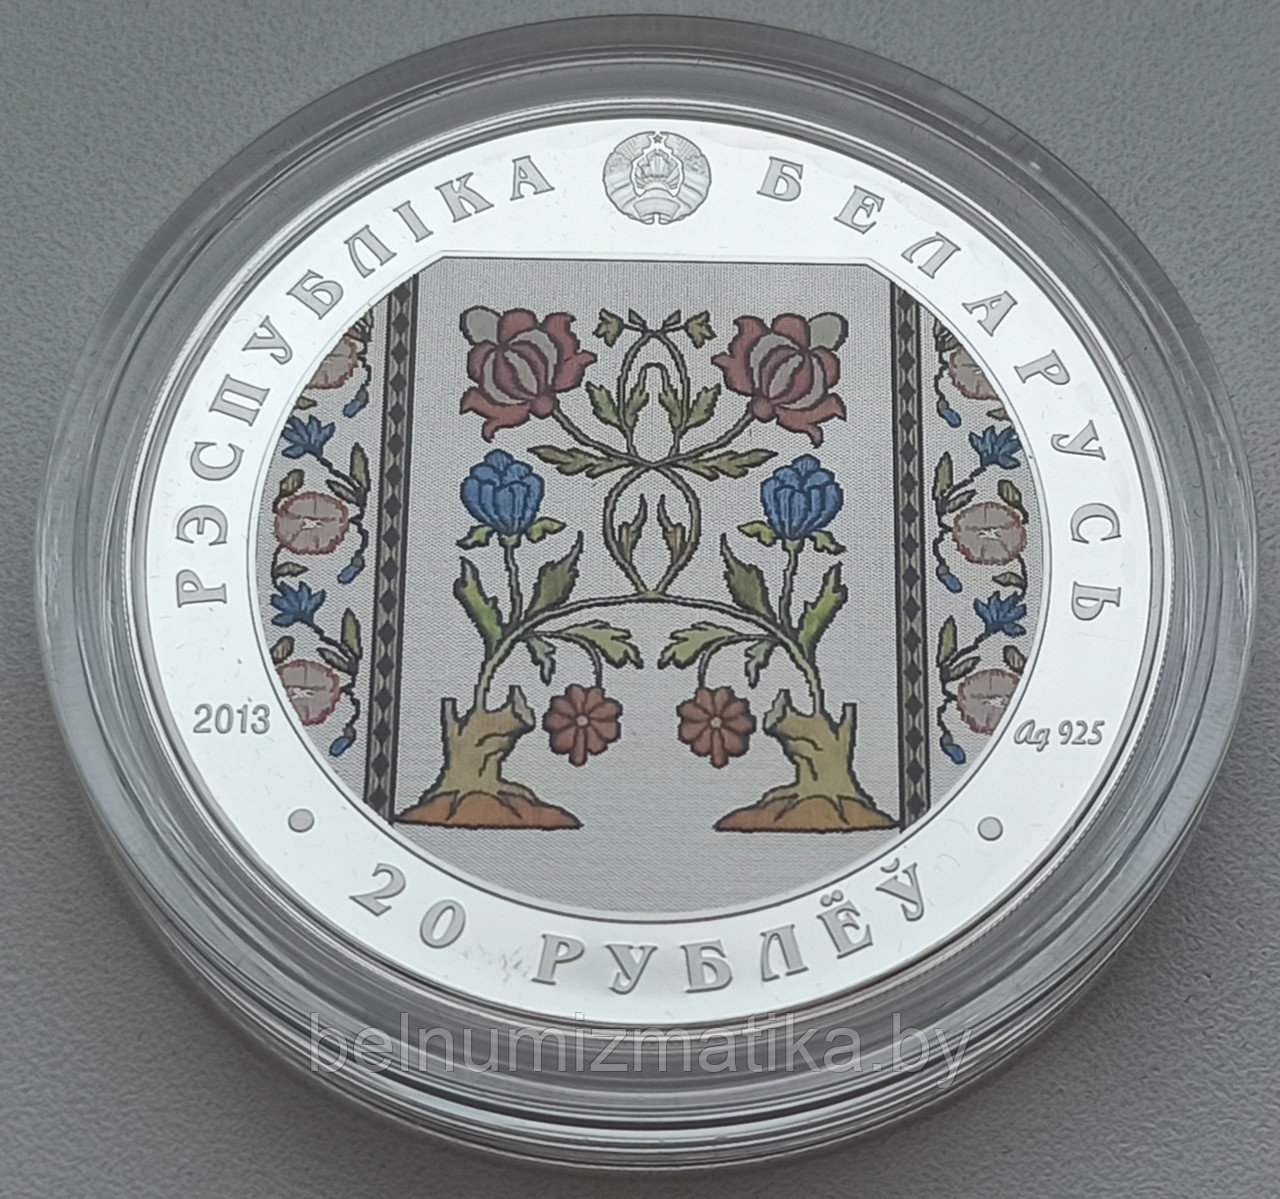 Слуцкие пояса. Ткачество, 20 рублей 2013, Серебро  KM# A531 Slutsk belts